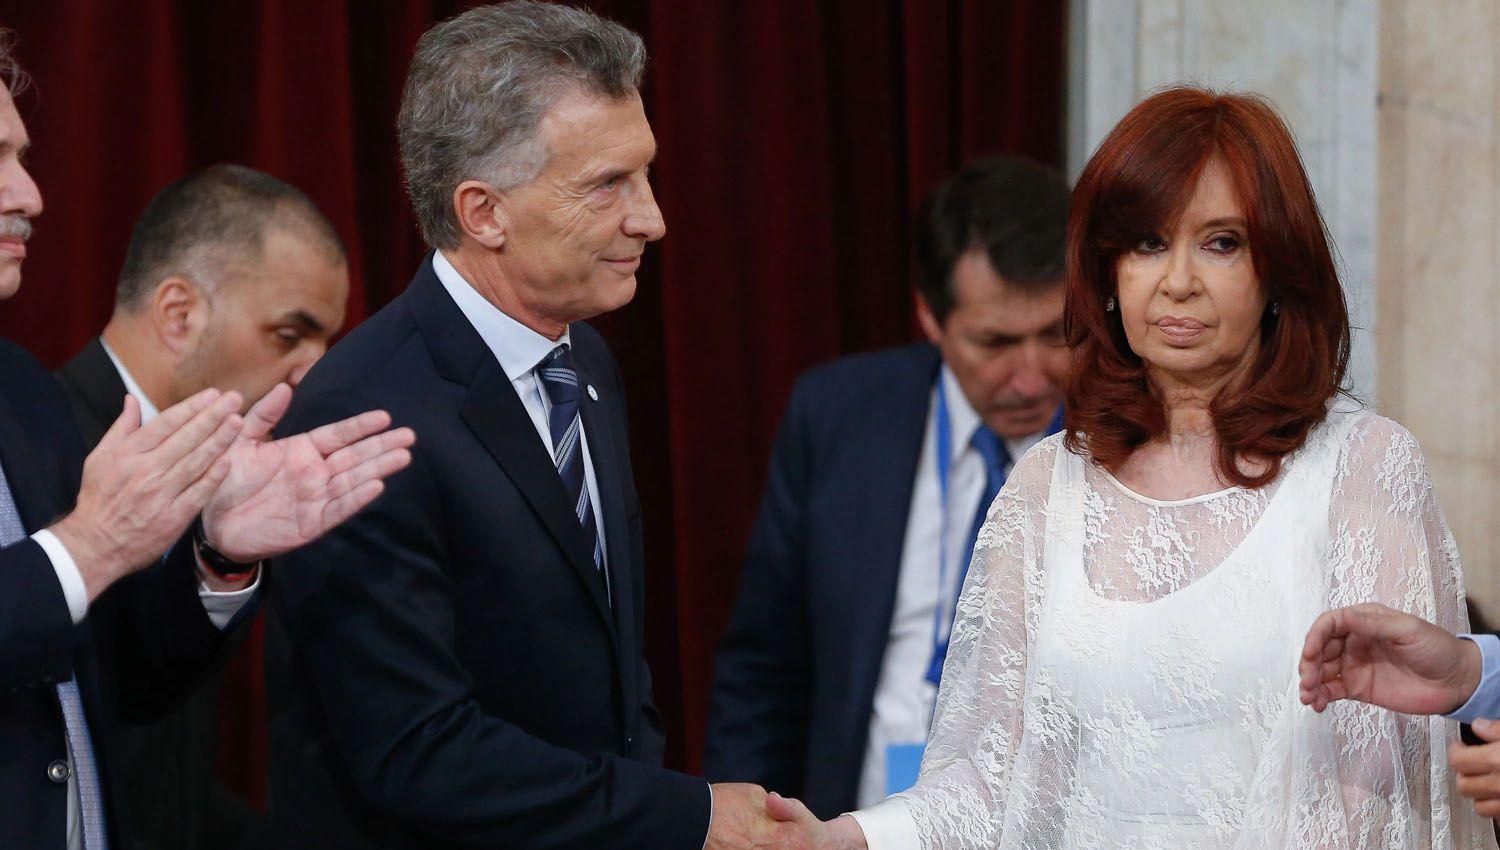 El mensaje de Mauricio Macri sobre la deuda con el FMI mientras Cristina Kirchner hablaba en Plaza de Mayo